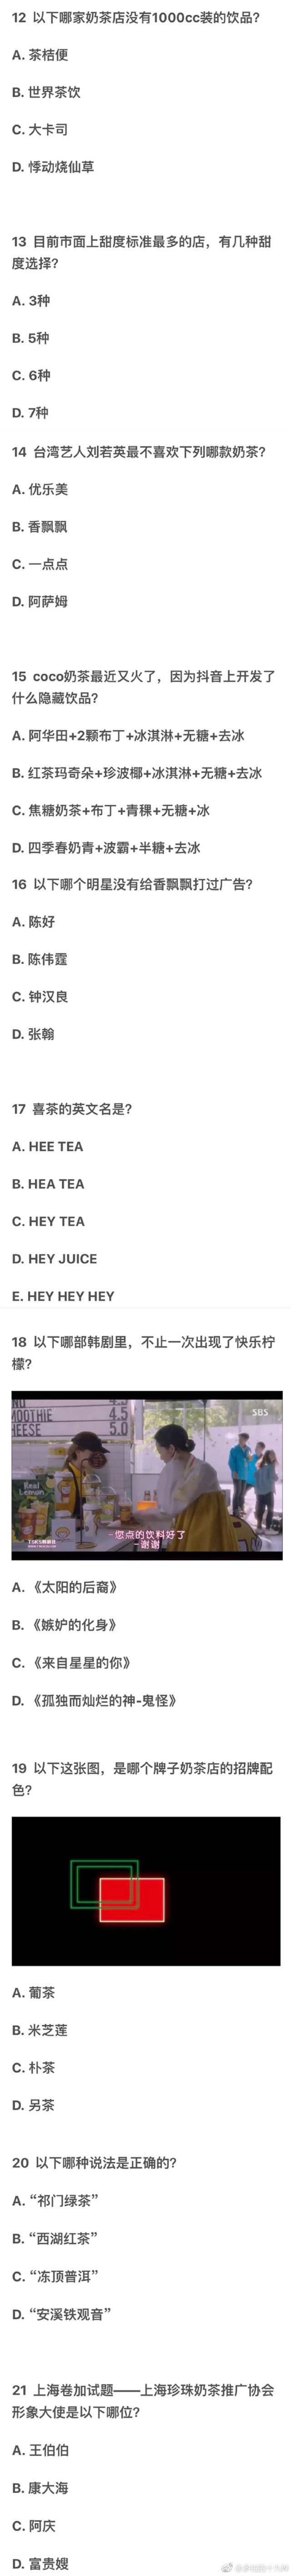 奶茶知识水平测试（上海卷）来了解一下。